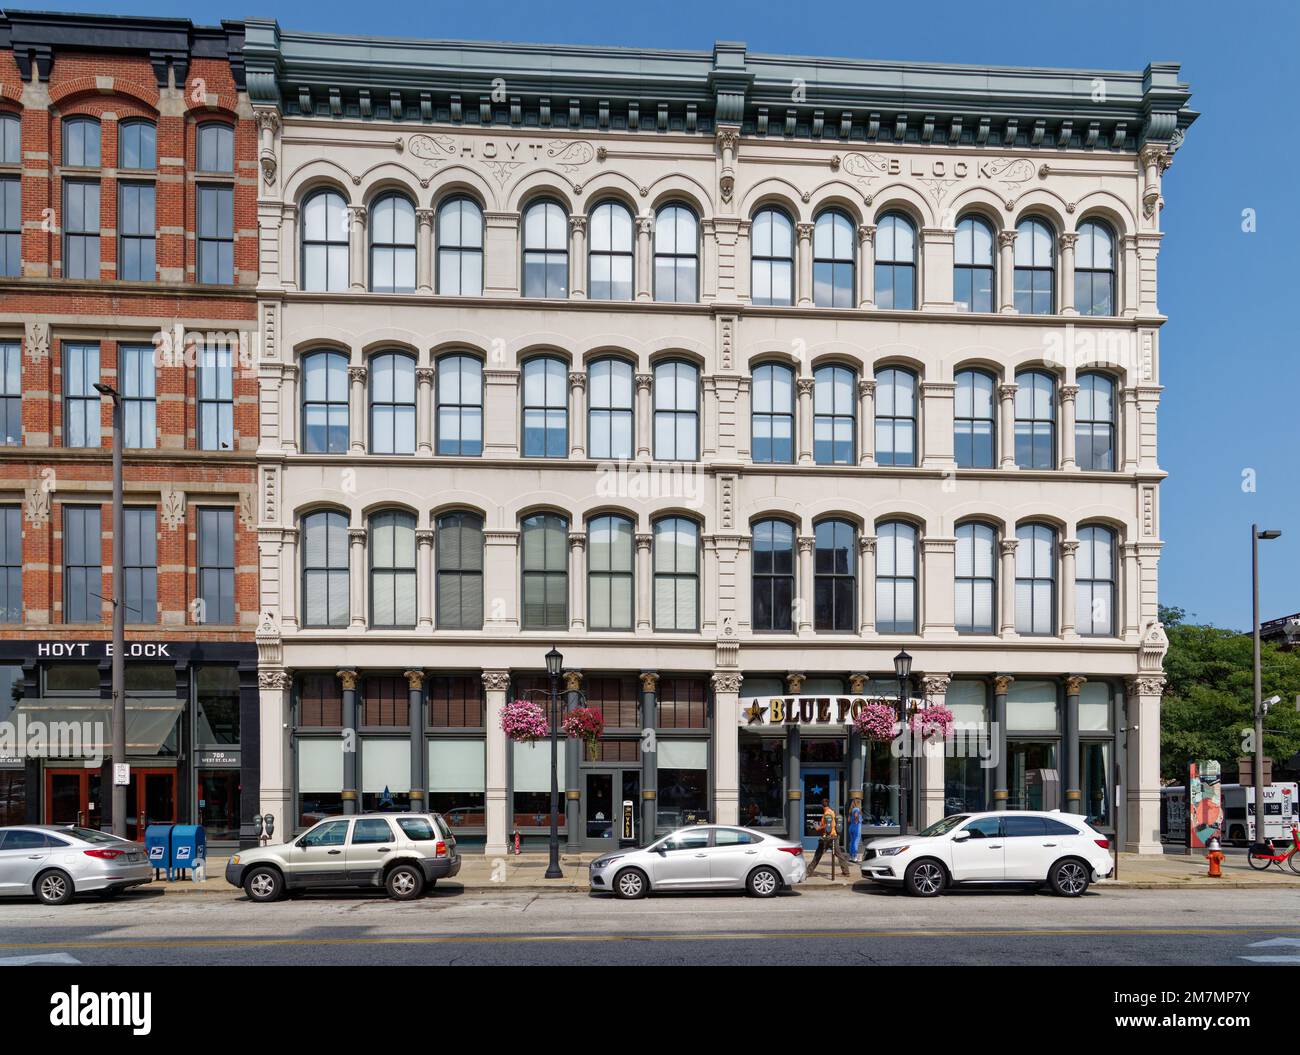 Hoyt Block, all'angolo di West St Clair Avenue e West 6th Street, è l'ultima architettura in pietra sopravvissuta nel Warehouse District. Foto Stock